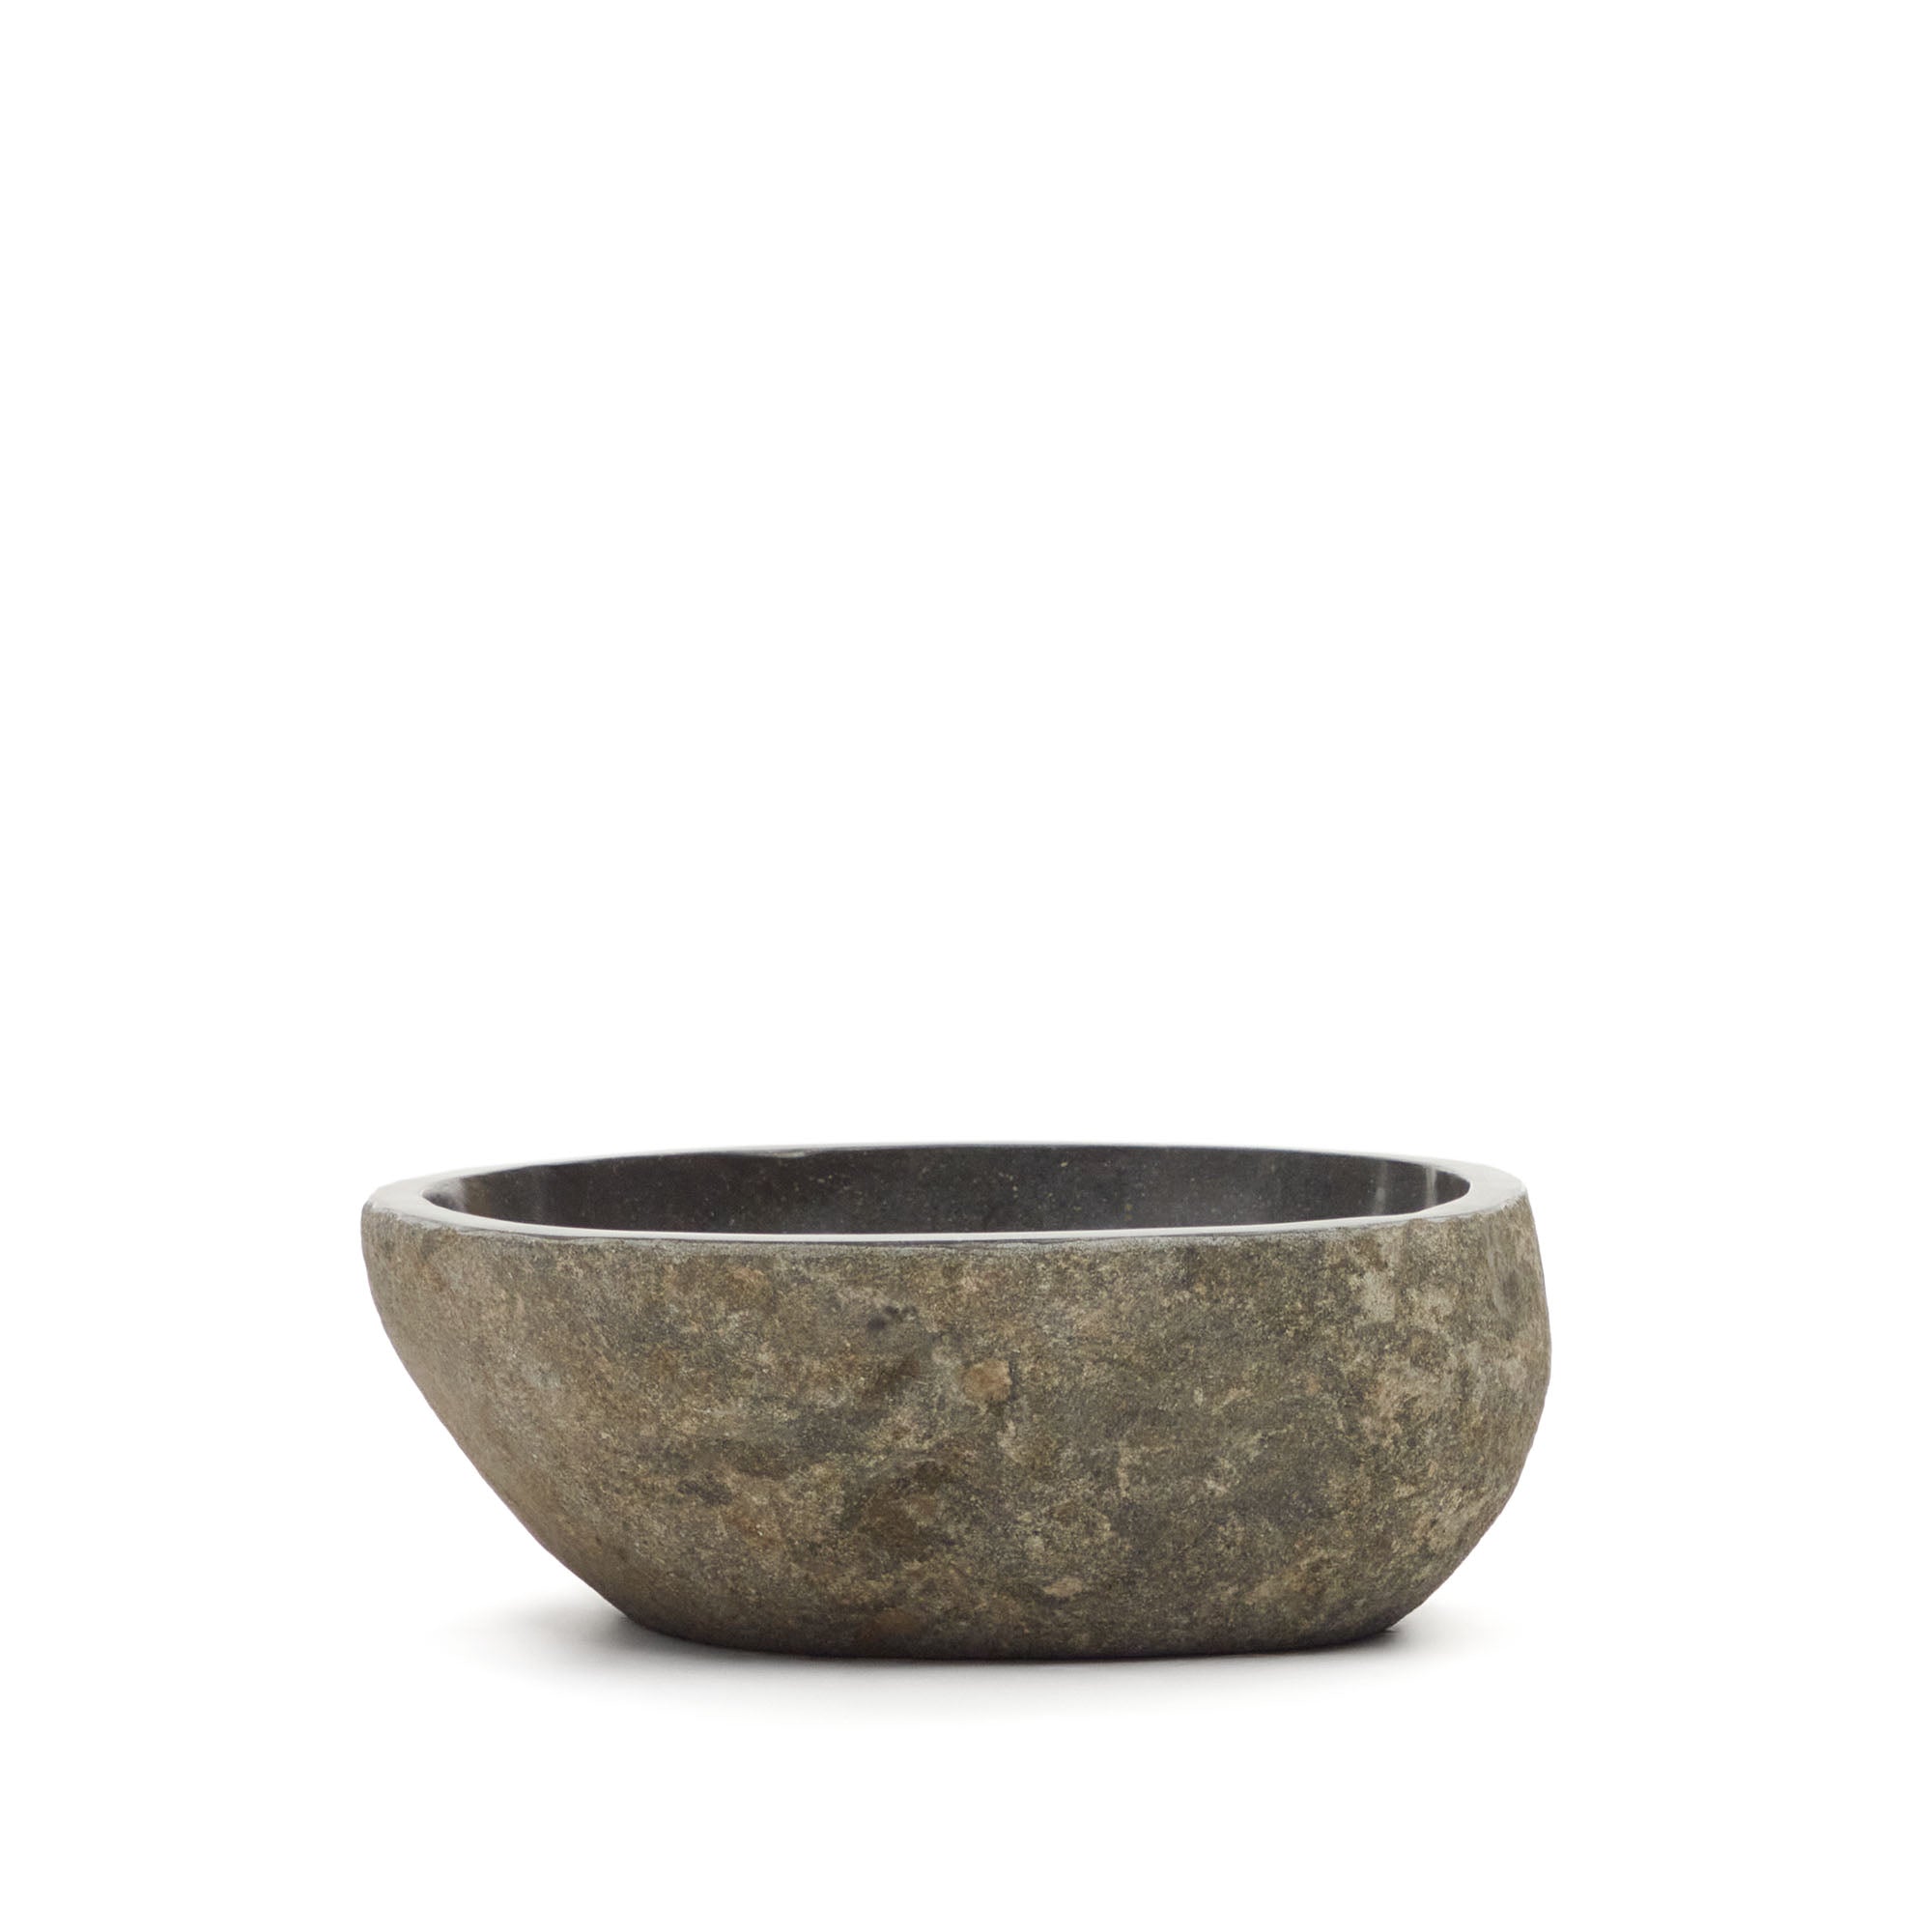 Tetsu kő mosdókagyló, Ø 40 cm